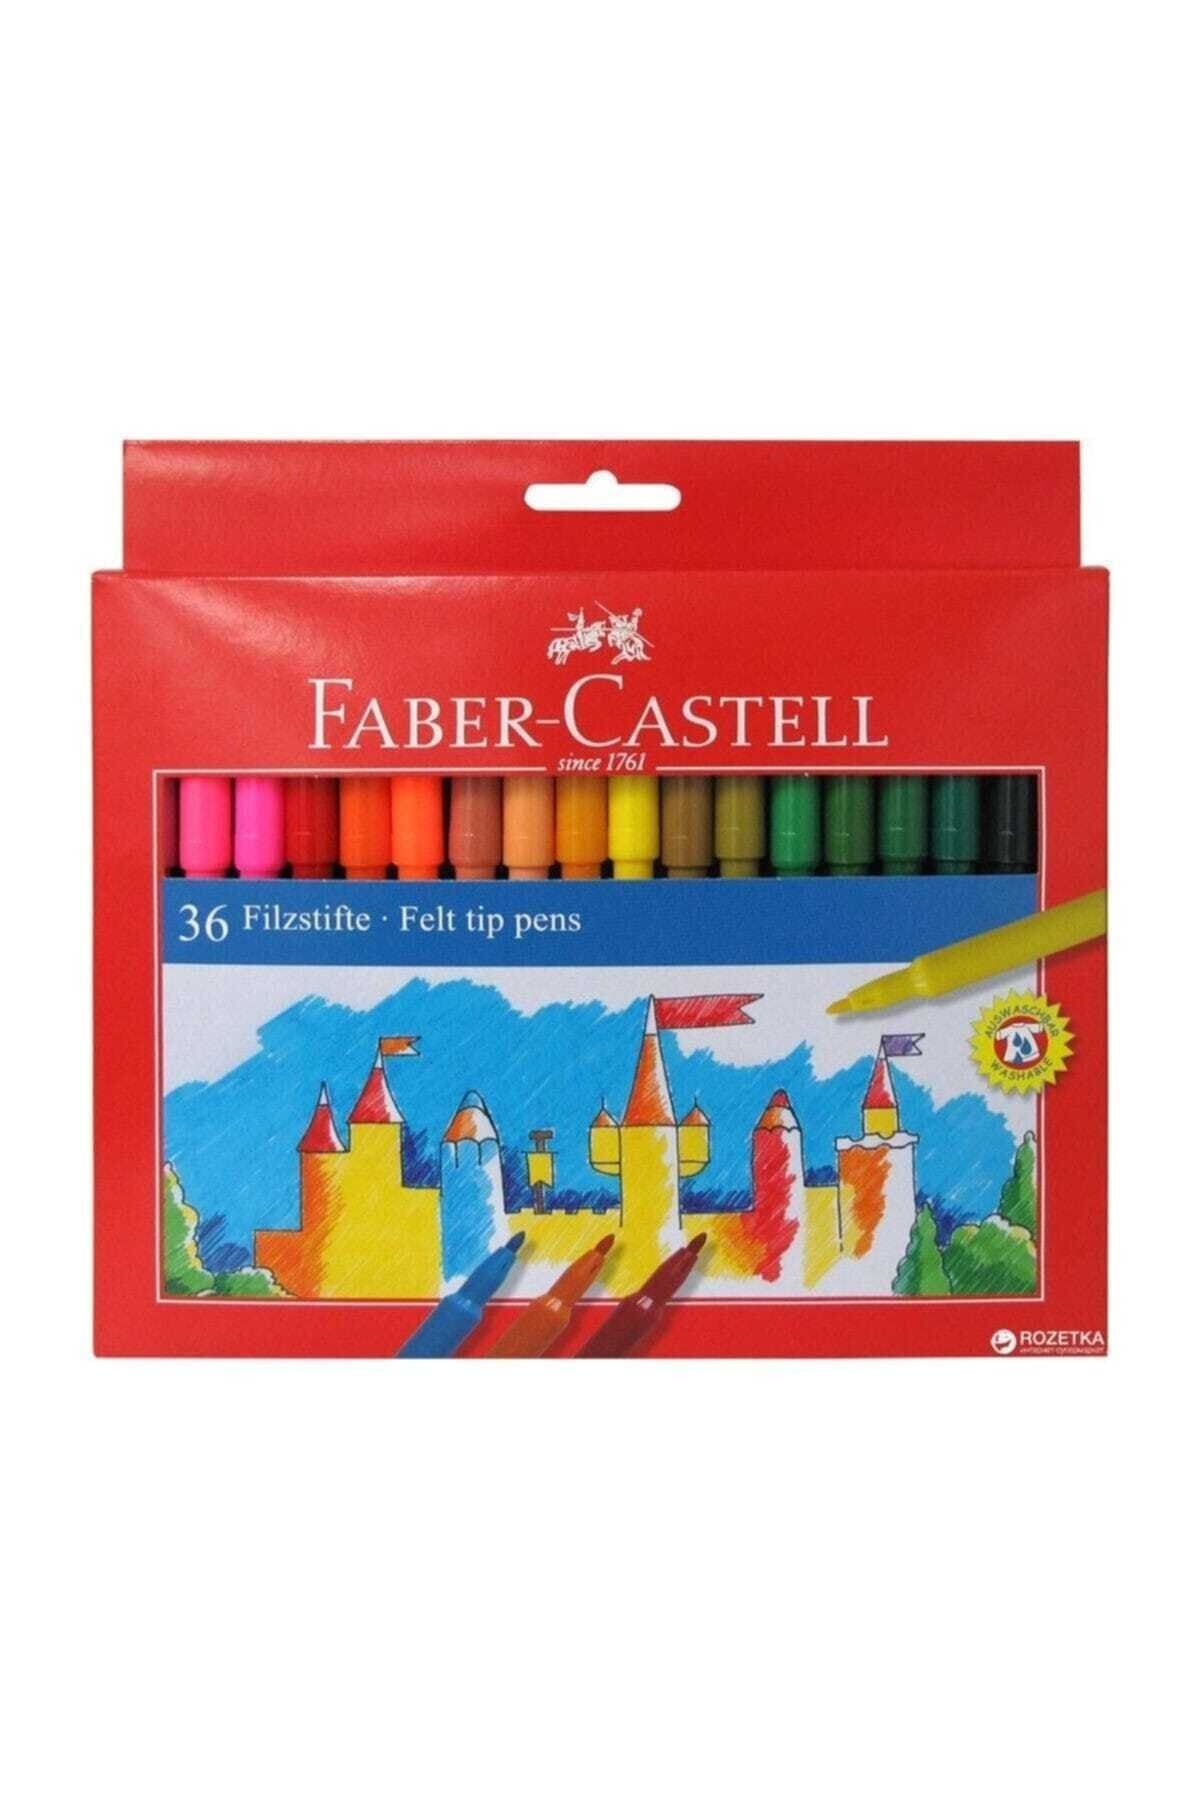 Faber Castell 36 Renk Yıkanabilir Keçeli Kalem